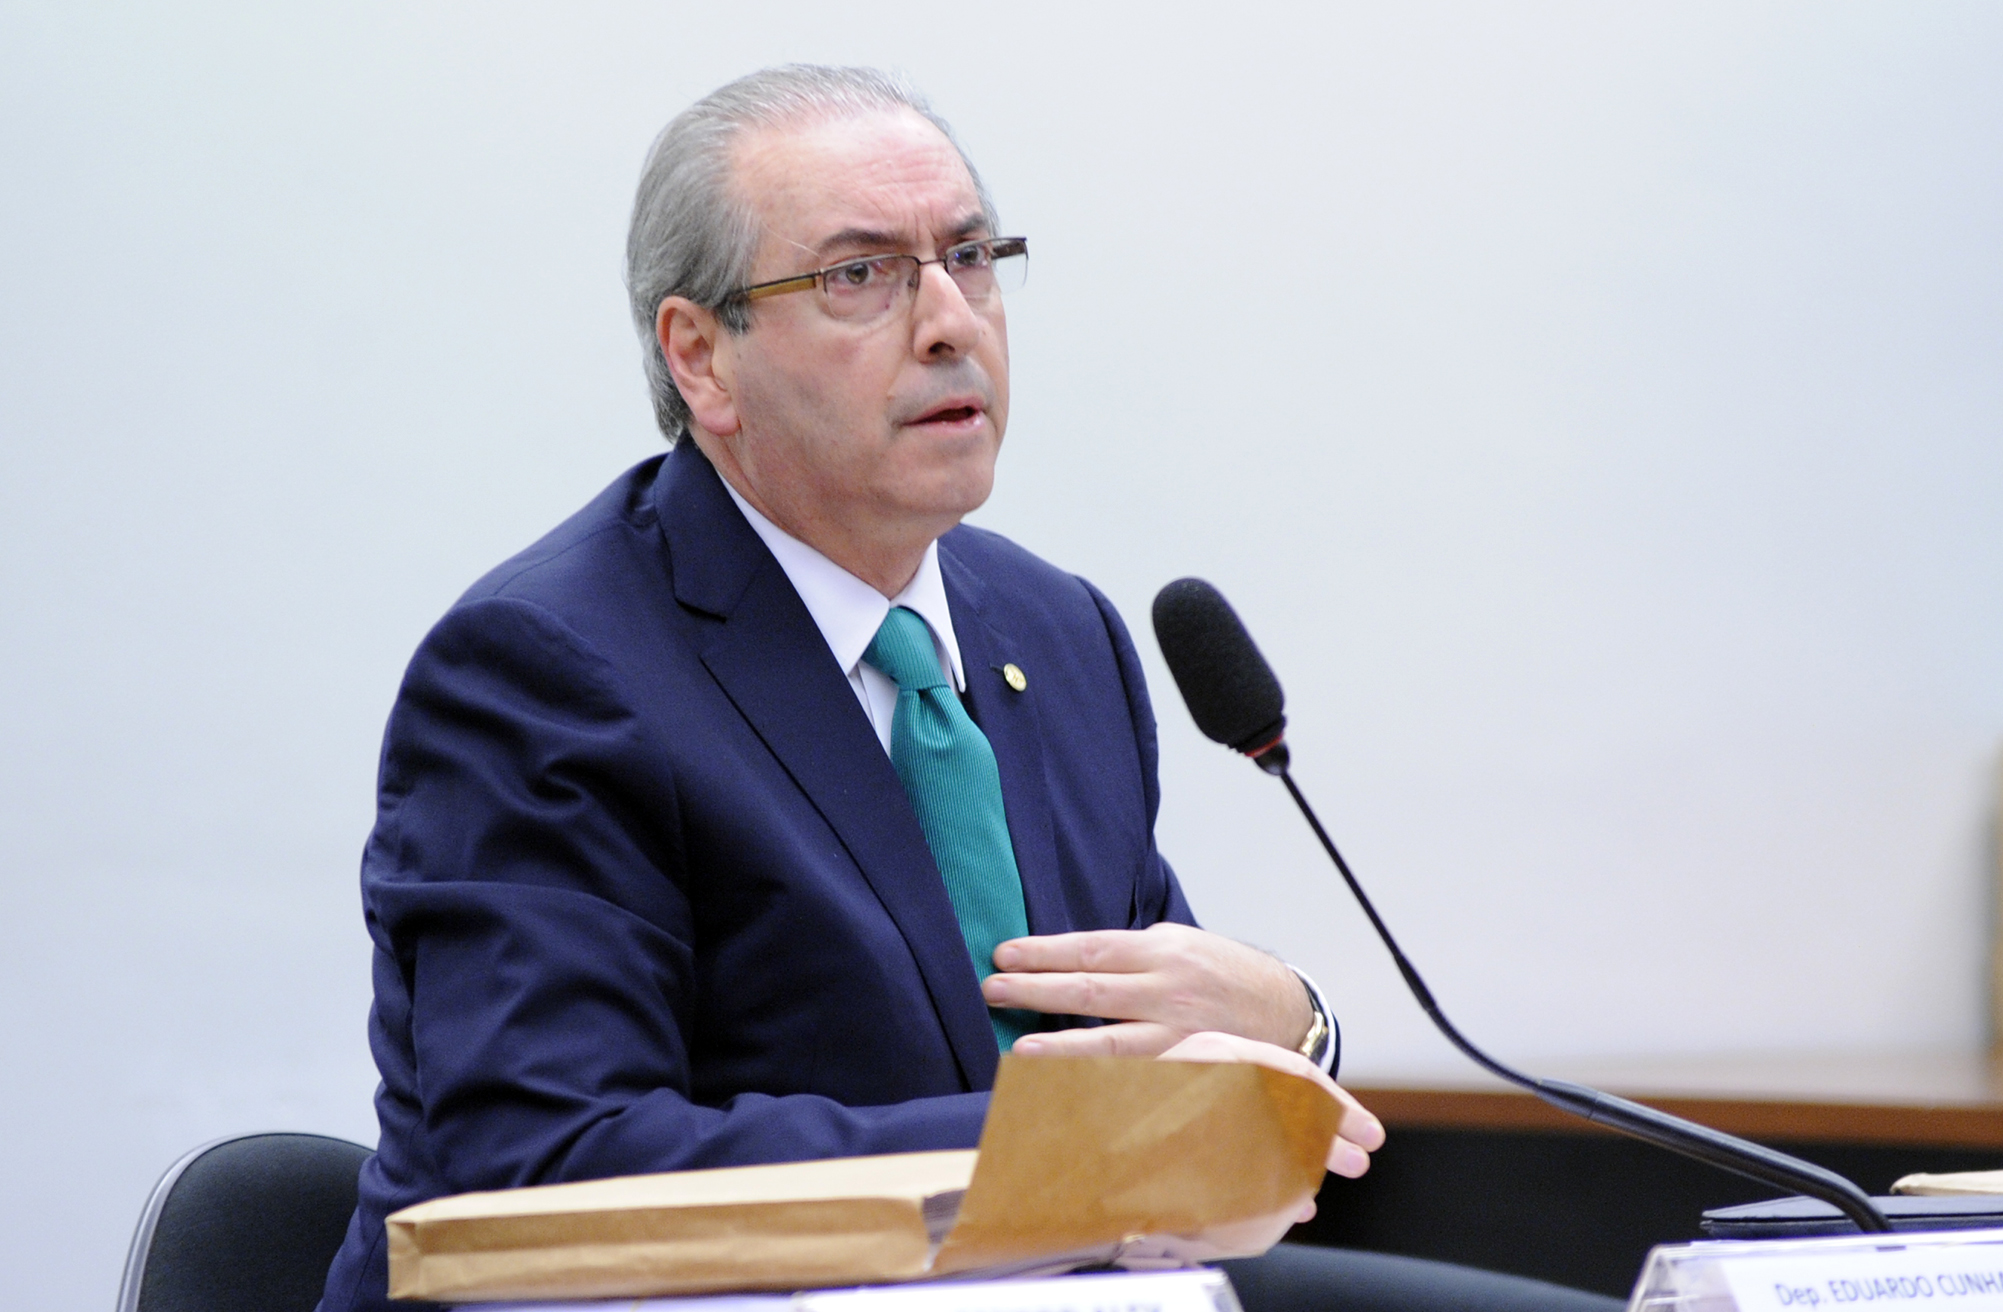 Lucio Bernardo Junior / Câmara dos Deputados